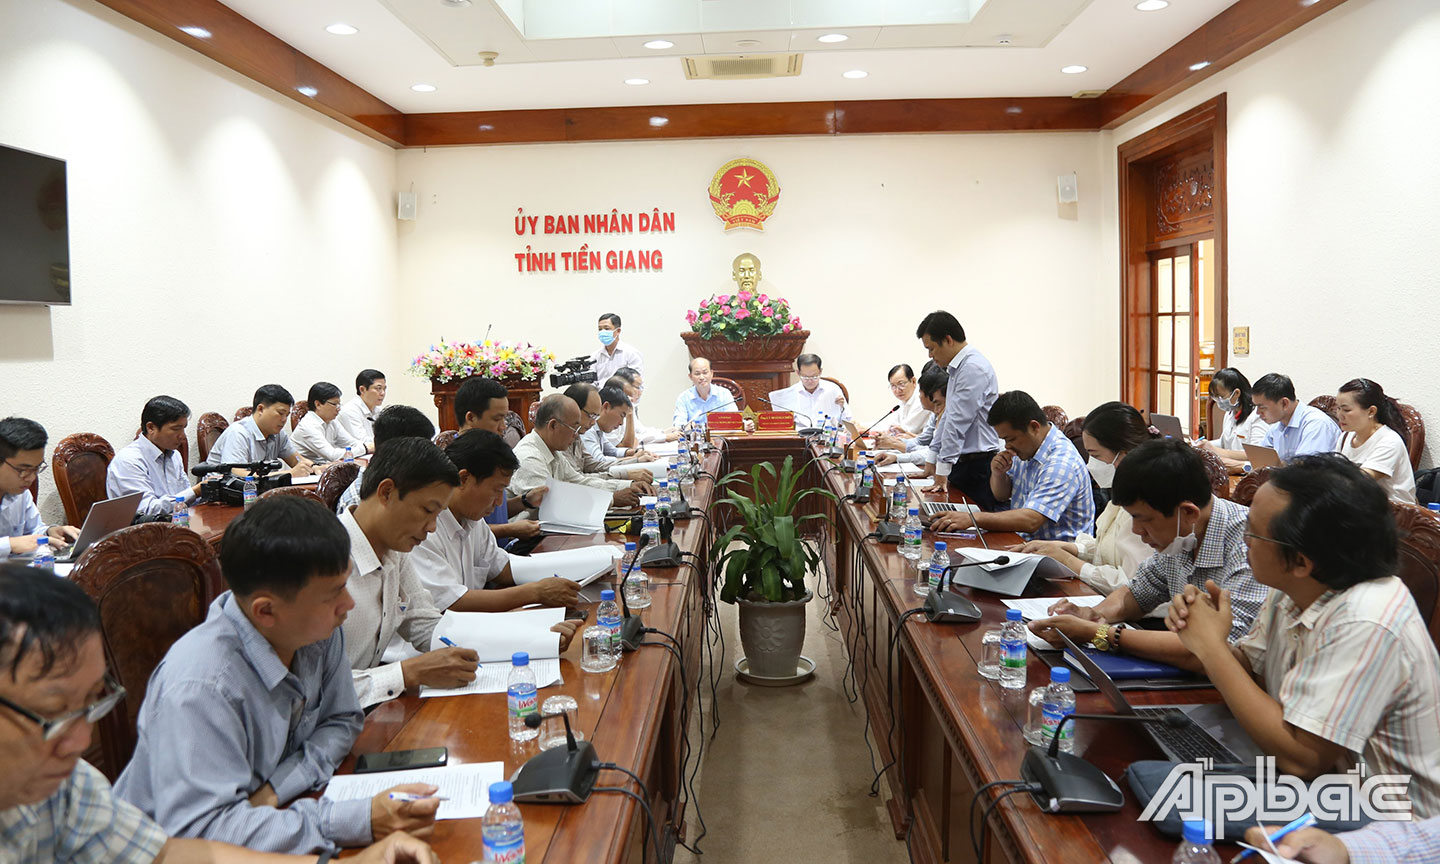 UBND tỉnh Tiền Giang tổ chức Họp báo thông tin về tình hình thu phí sử dụng dịch vụ đường bộ BOT Cai Lậy chiều 5-10.